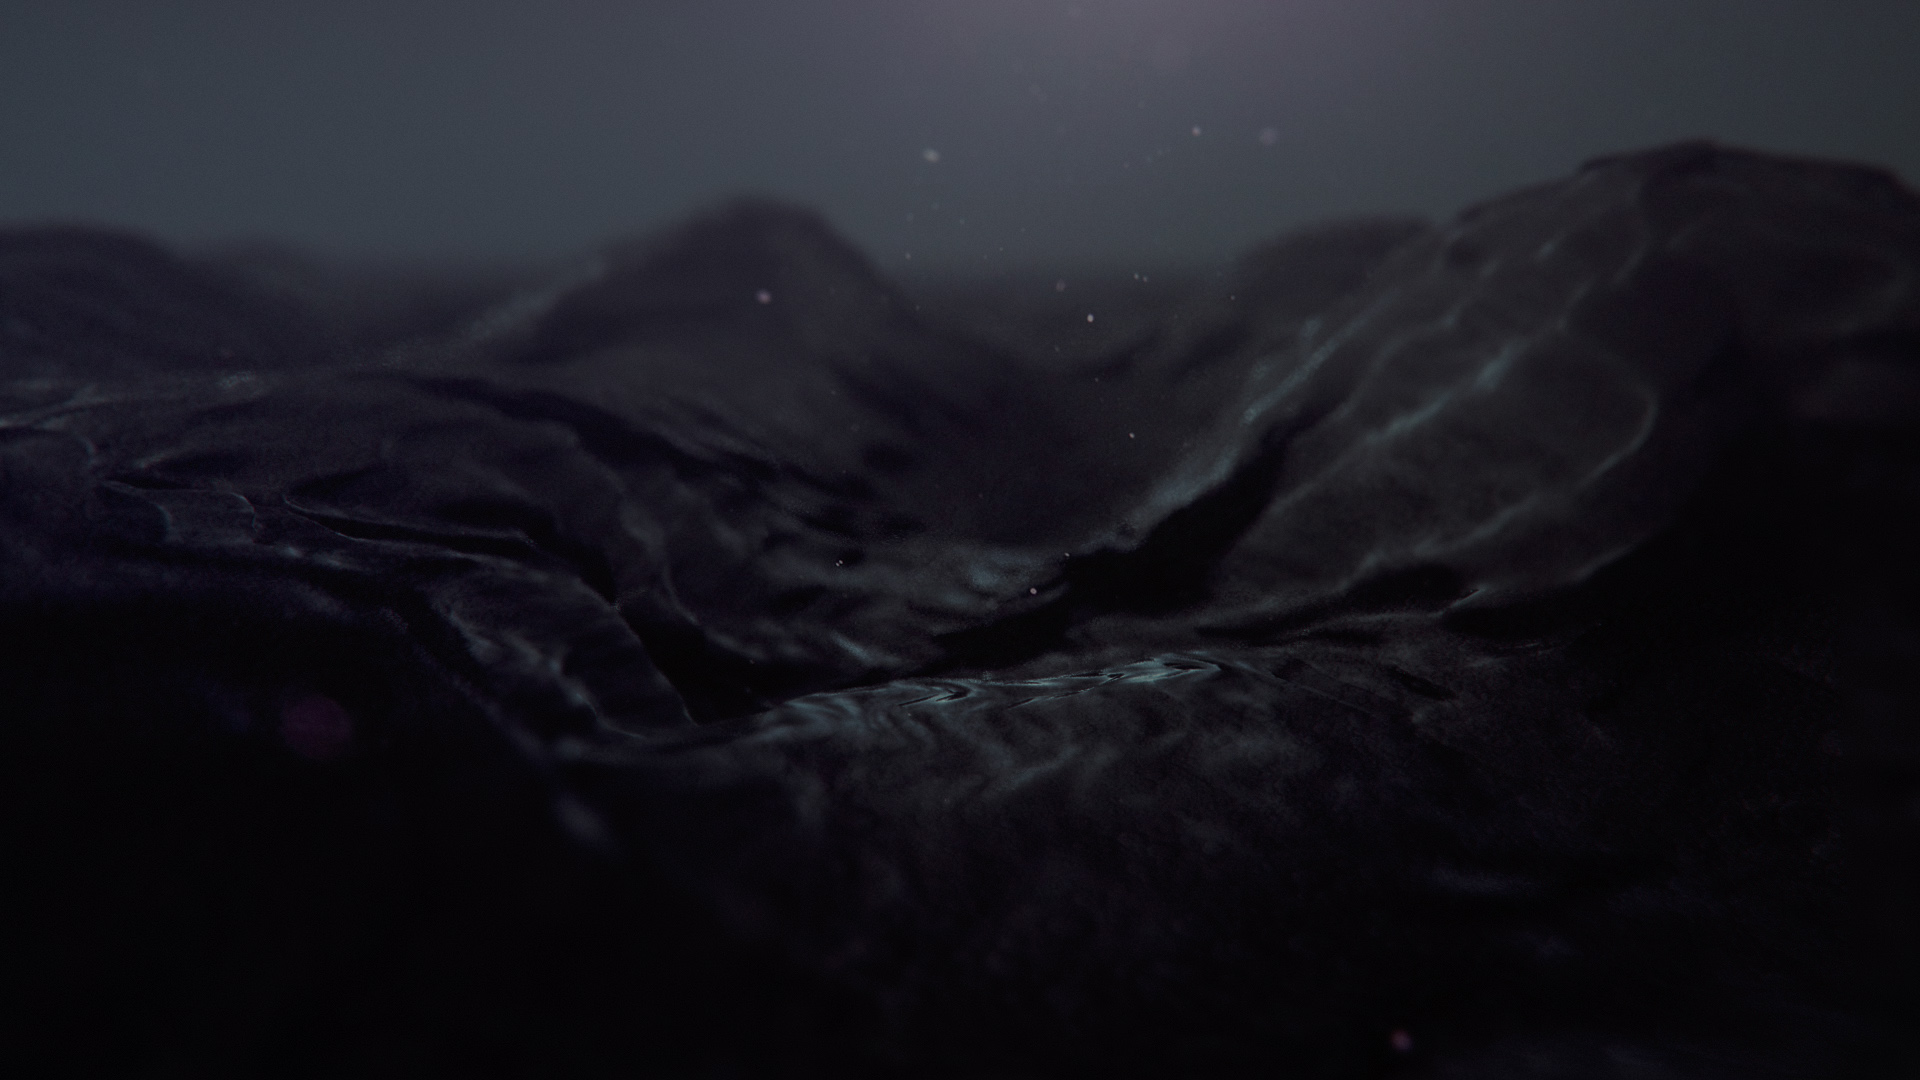 General 1920x1080 dark digital art water liquid minimalism black sea